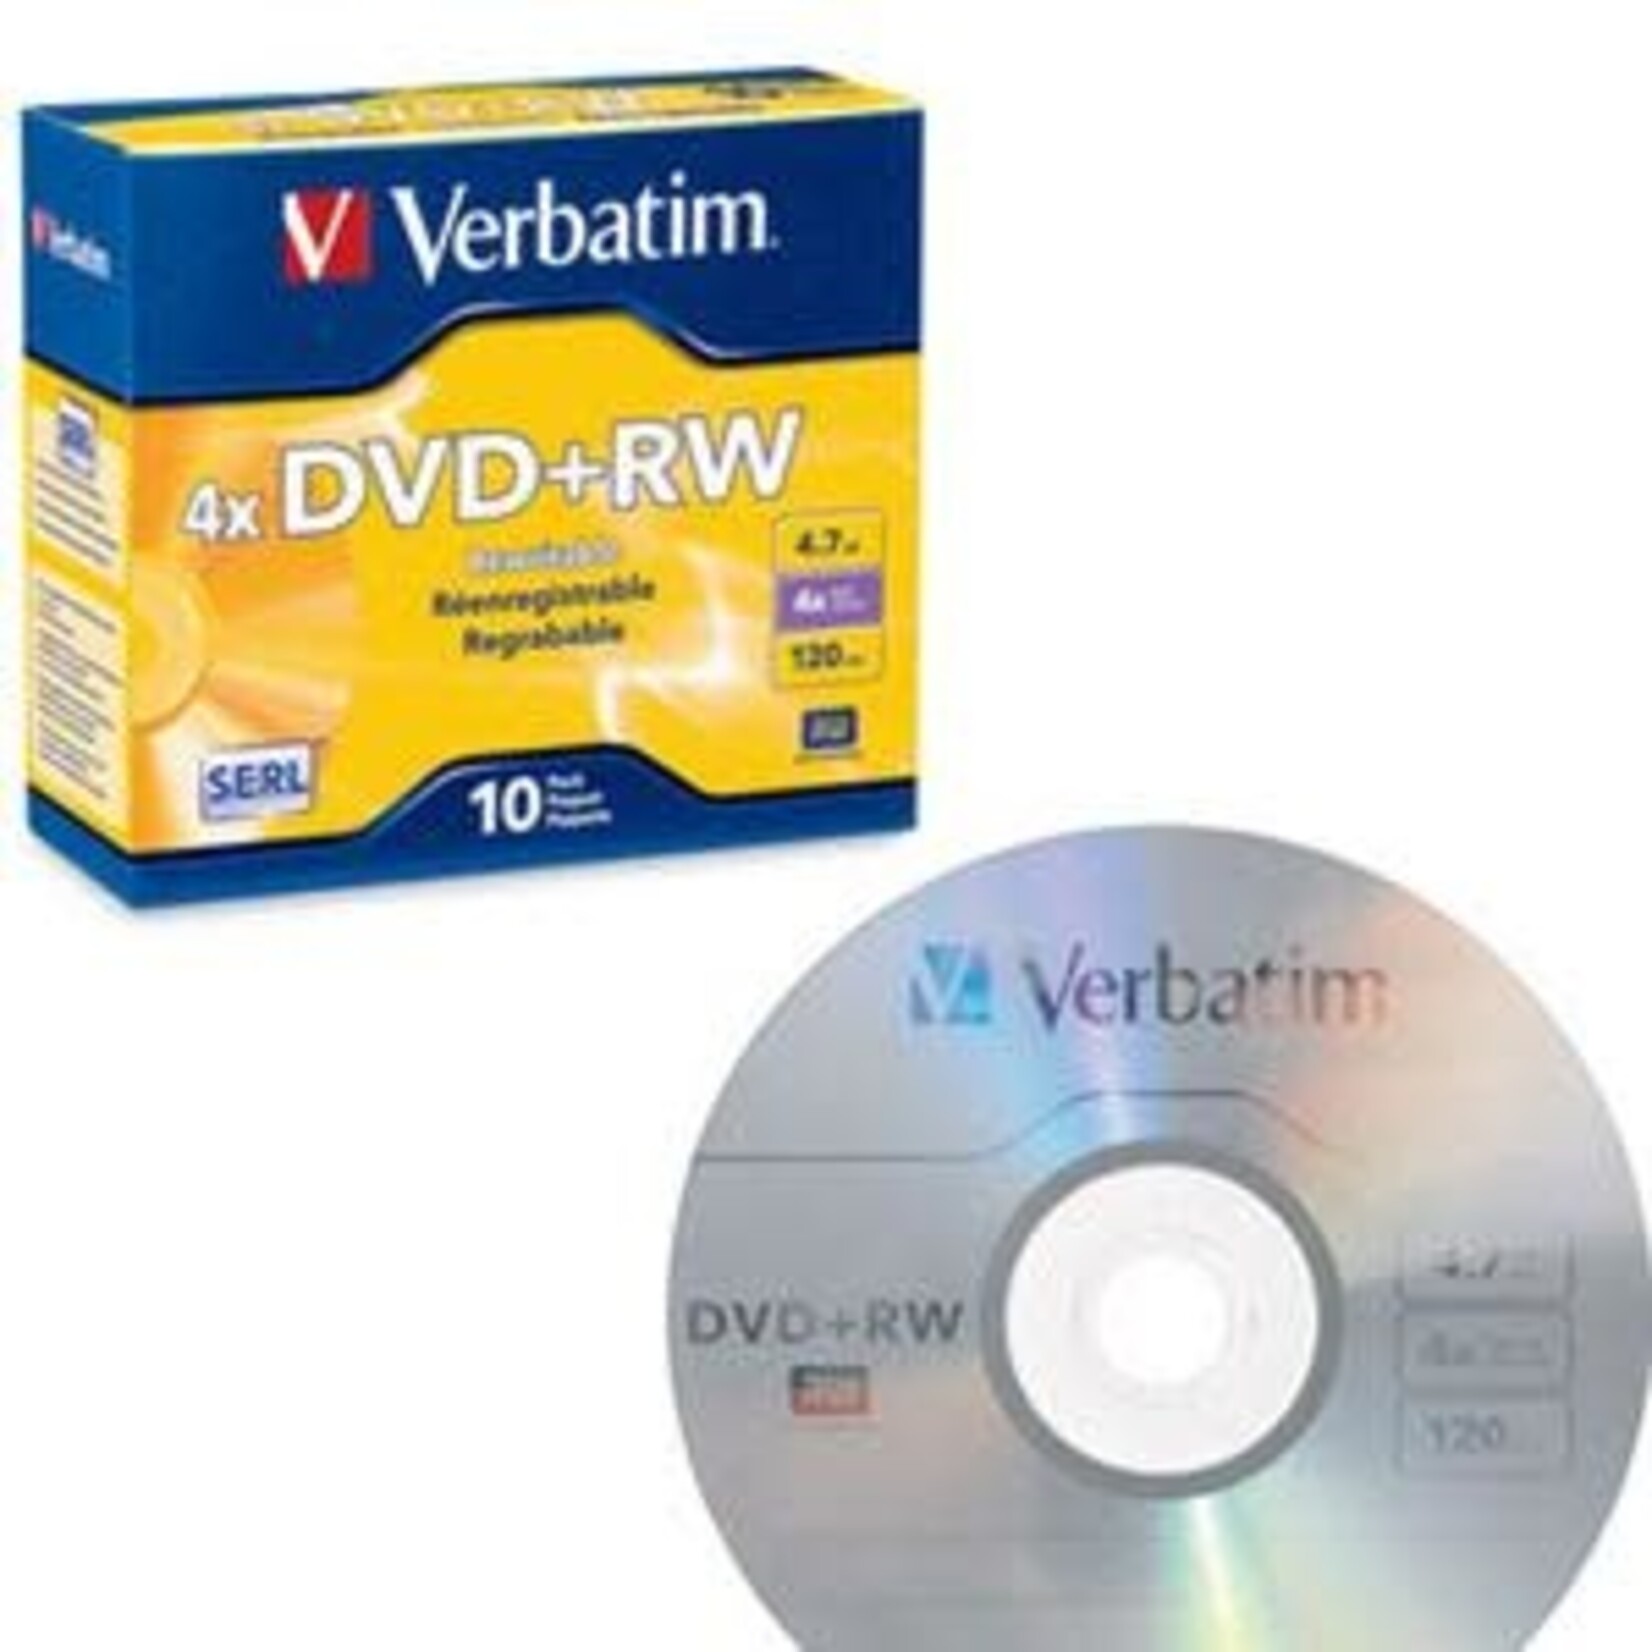 Verbatim Verbatim DVD+RW 10 Pack